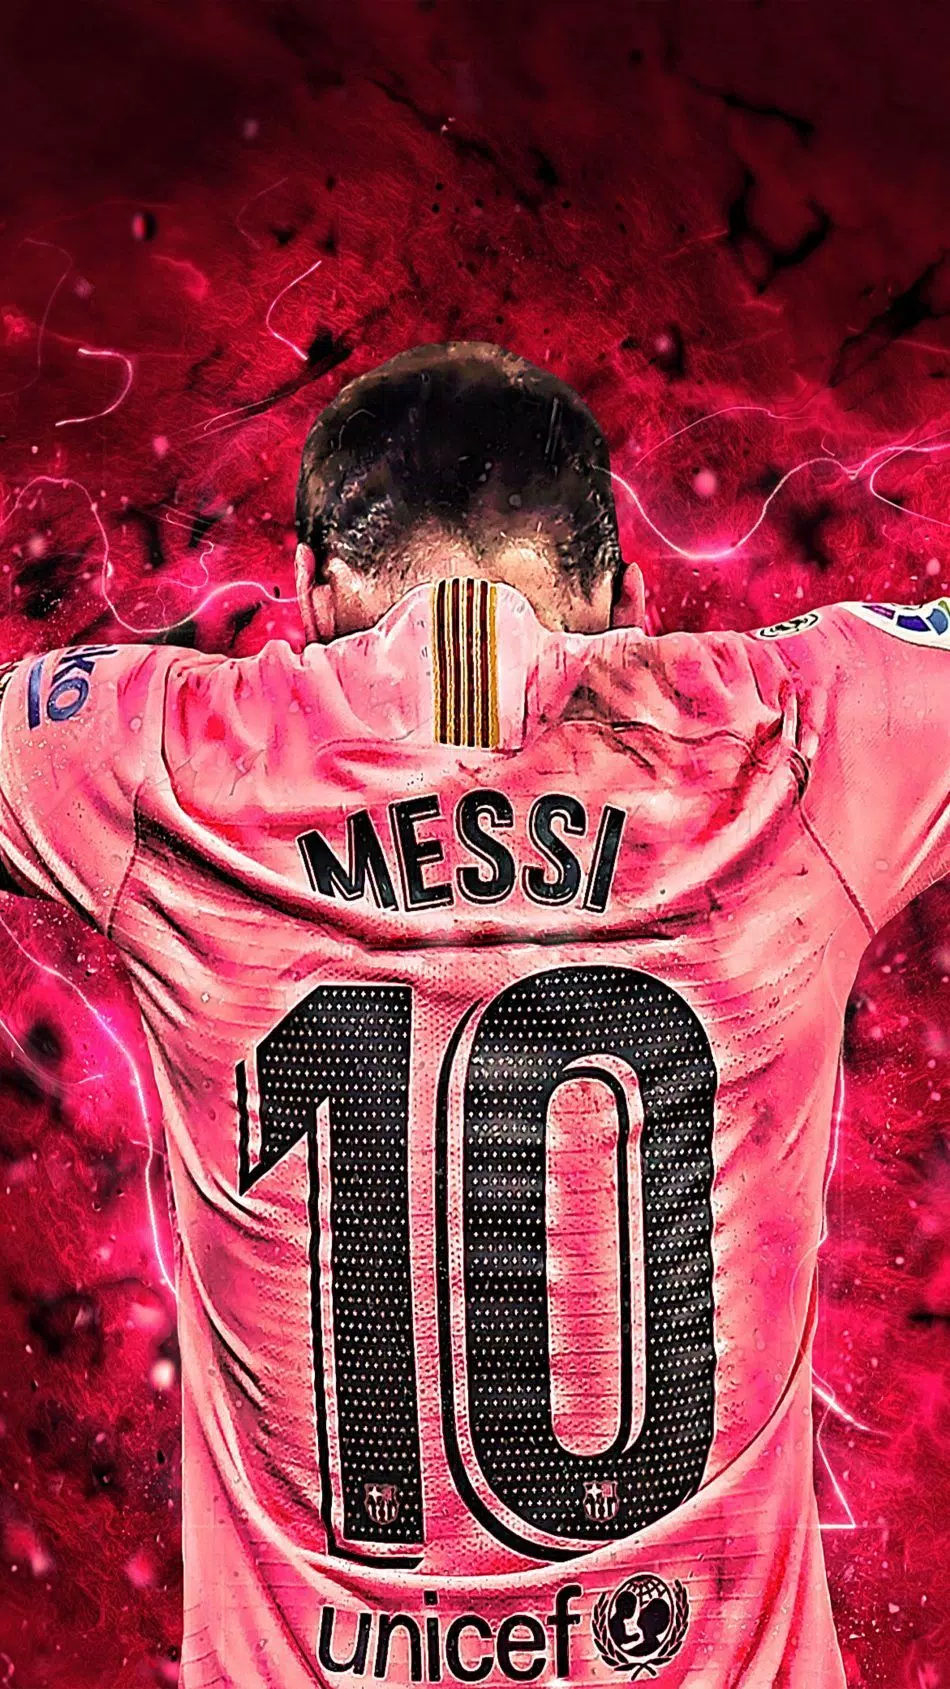 Với Messi 4k Wallpaper, bạn sẽ được tha hồ trải nghiệm cảm giác sống động về vị thiên tài bóng đá này. Hãy tải ngay ảnh nền 4K này để tận hưởng trọn vẹn khả năng nghệ thuật của Messi!